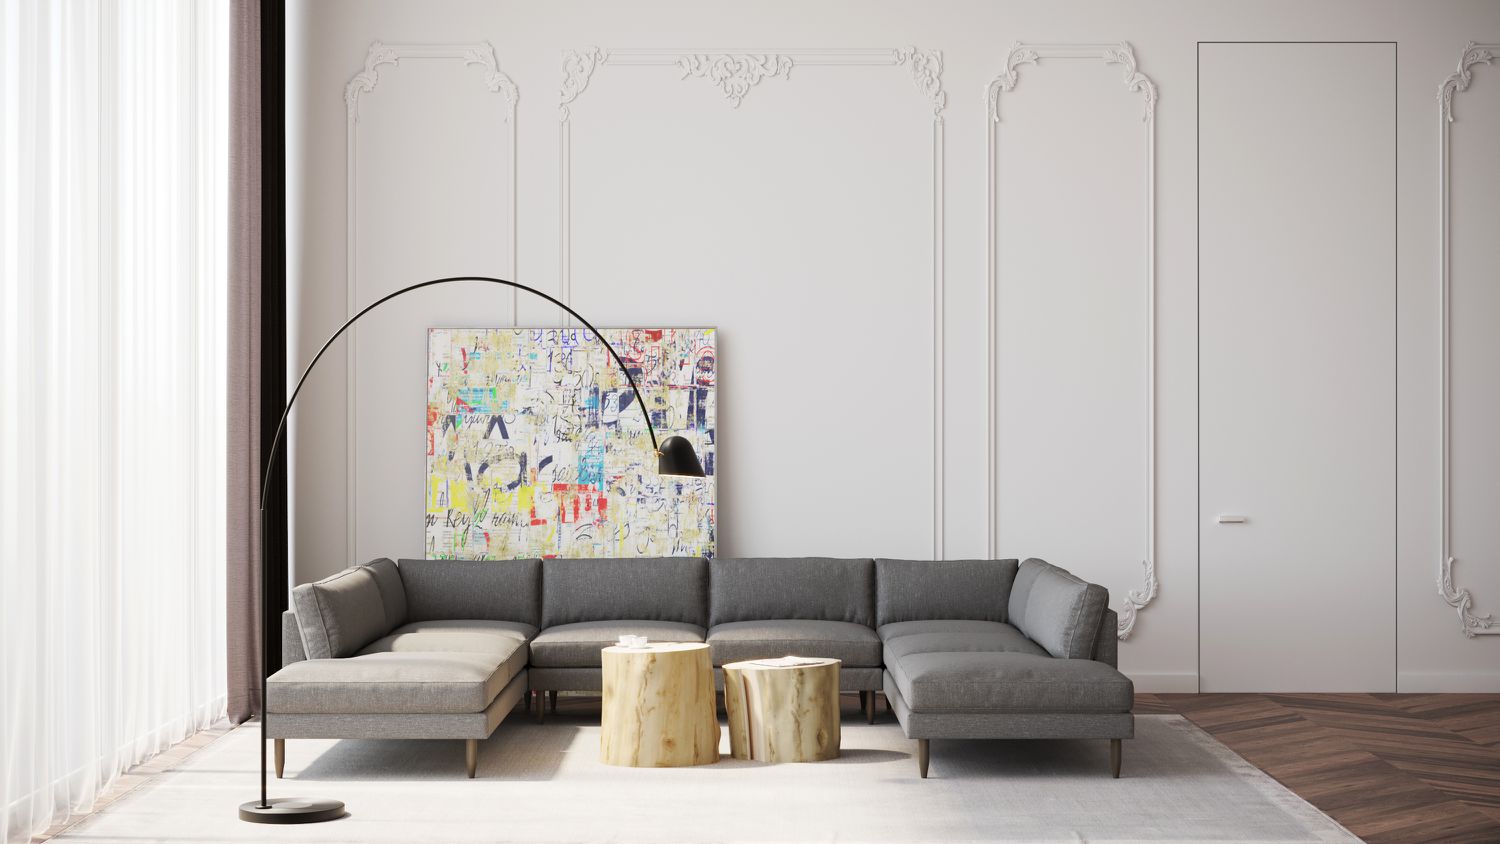 sofá seccional gris en salón con paredes altas y blancas con textura